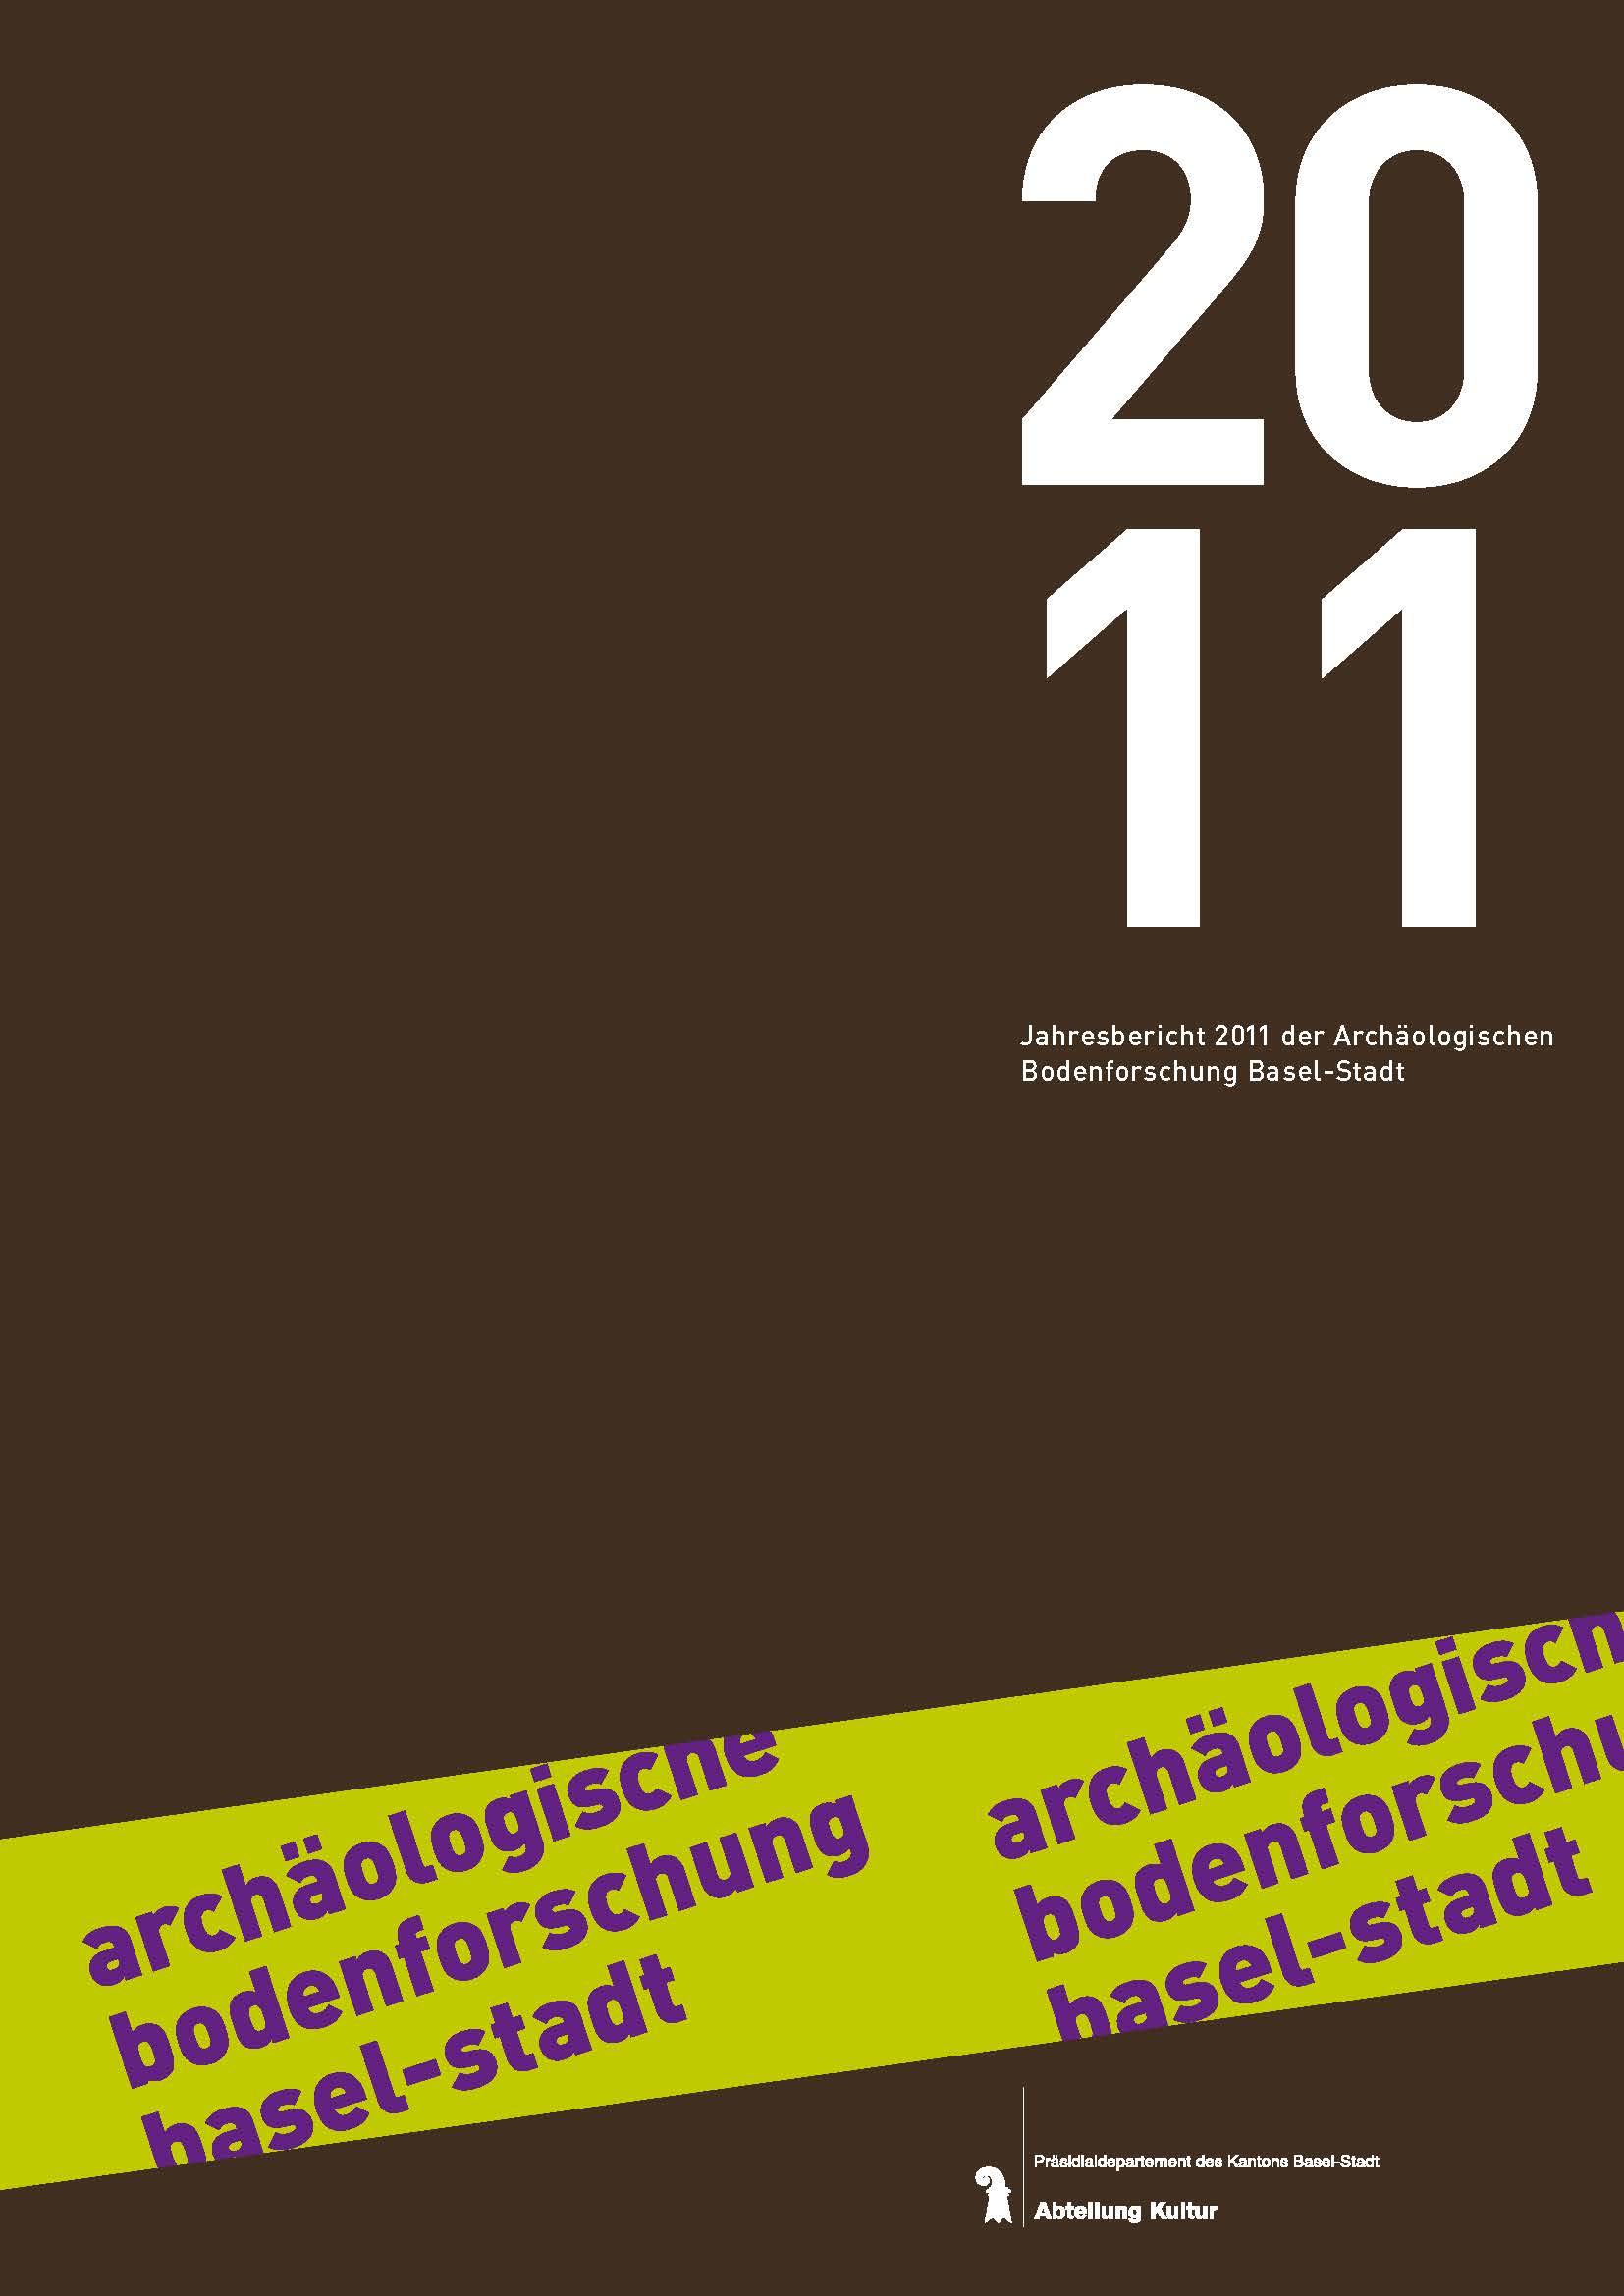 Vorderseite des Jahresberichts 2011